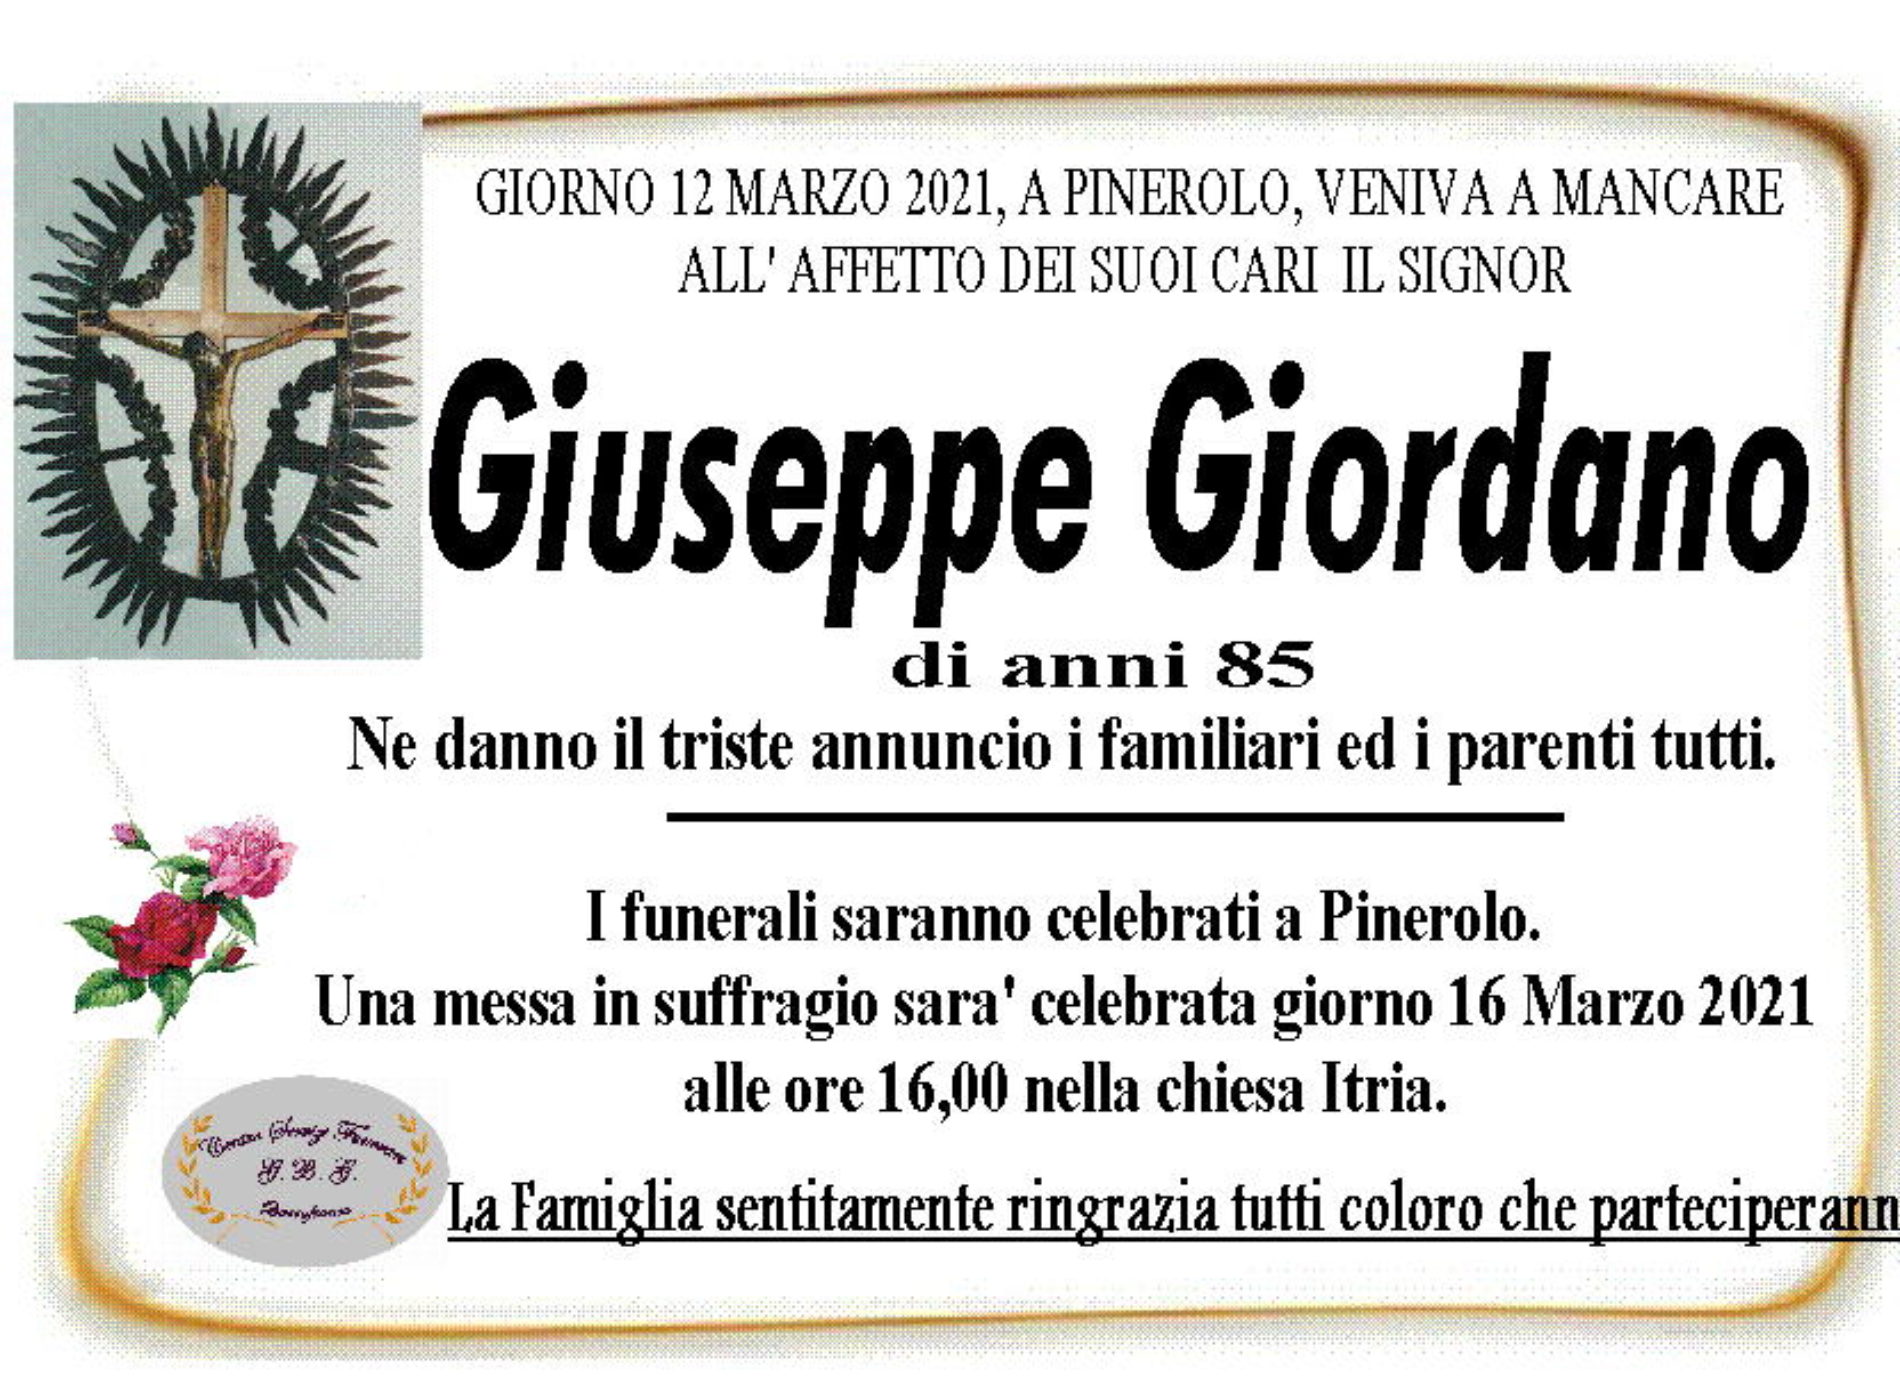 Annuncio servizi funerari agenzia G.B.G sig. Giordano Giuseppe di anni 85